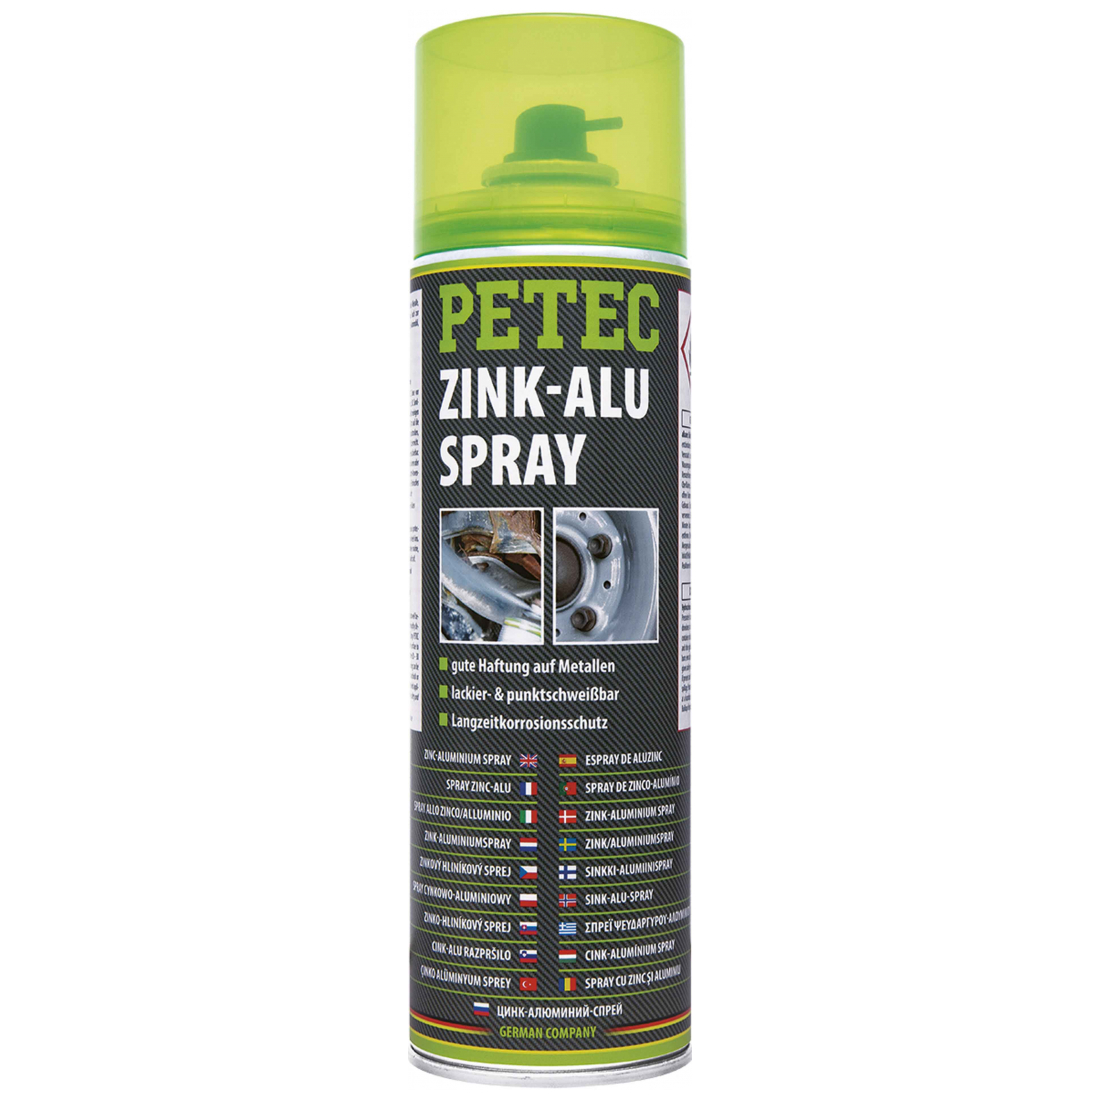 Petec Zink-Alu Spray silber 500 ml 71050